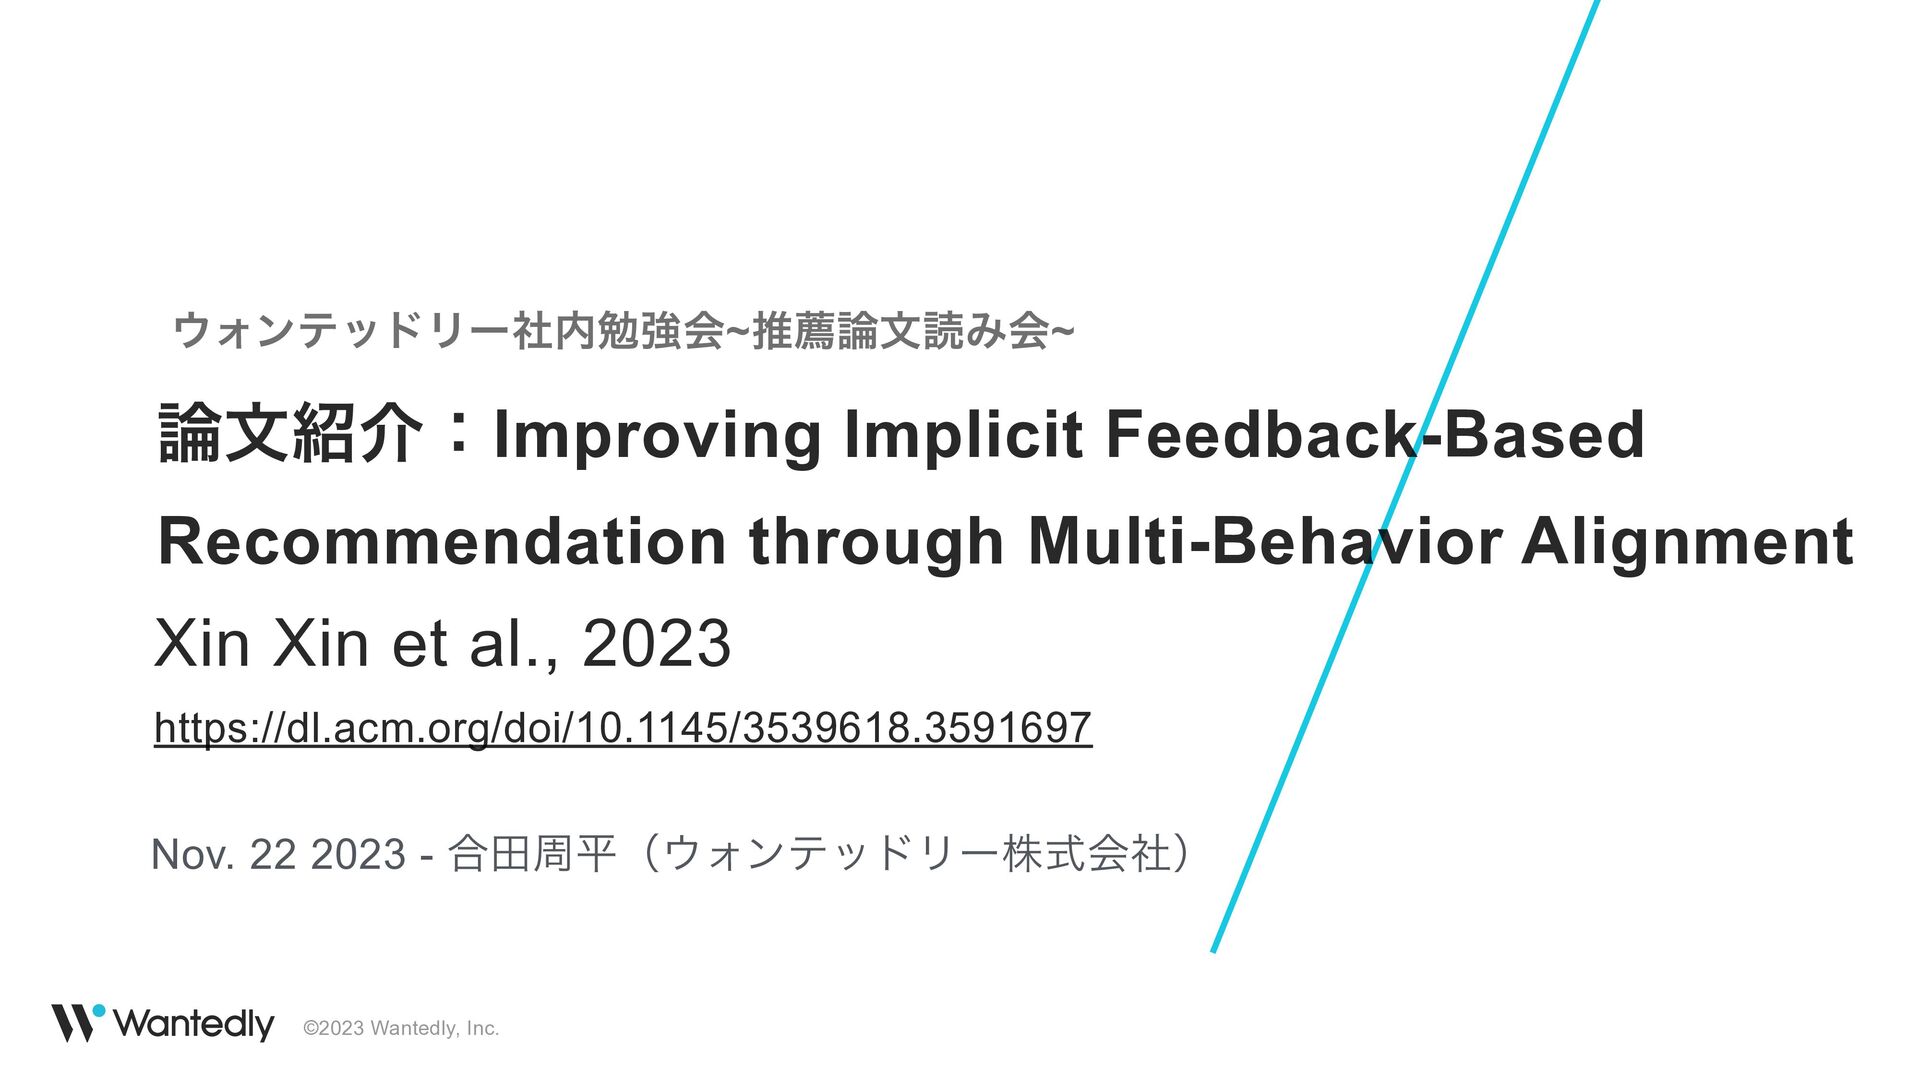 論文紹介: Improving Implicit Feedback-Based Recommendation through Multi-Behavior Alignment(Xin Xin et al., 2023)